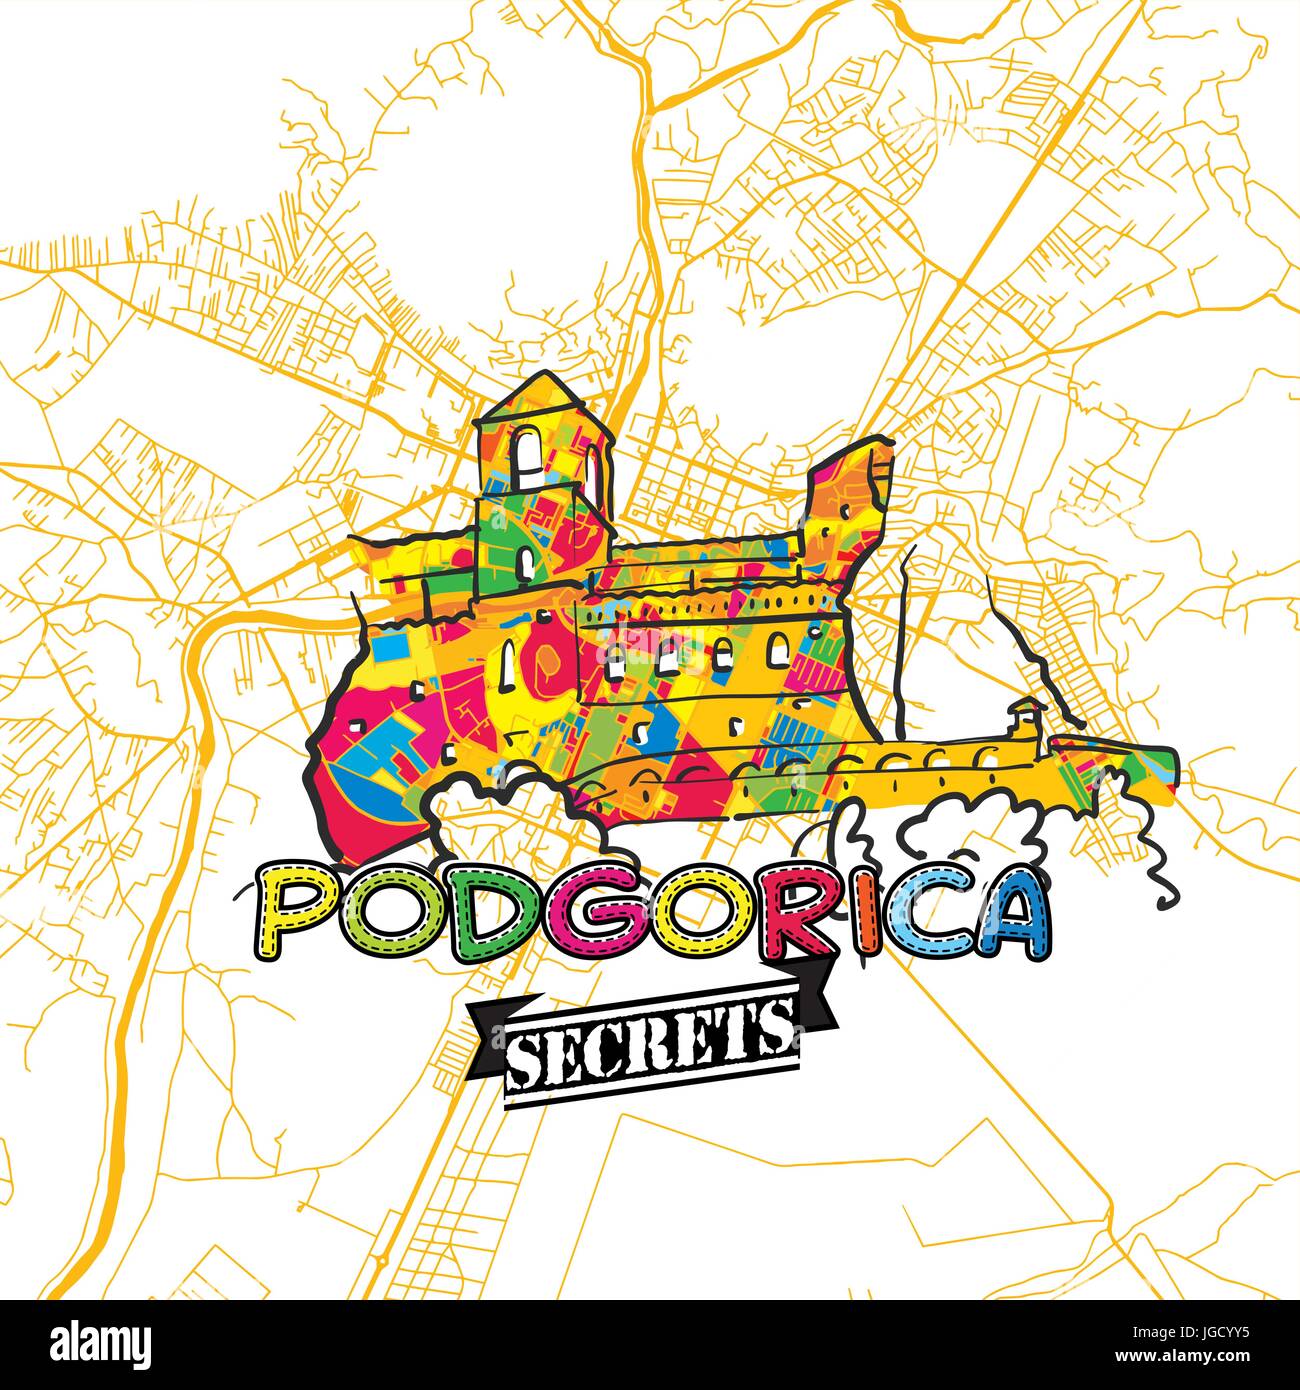 Podgorica Reise Geheimnisse Art Map für die Zuordnung von Experten und Reiseführer. Handgemachte Stadt Logo, Typo-Abzeichen und Hand gezeichnete Vektorbild auf Top sind gruppiert Stock Vektor